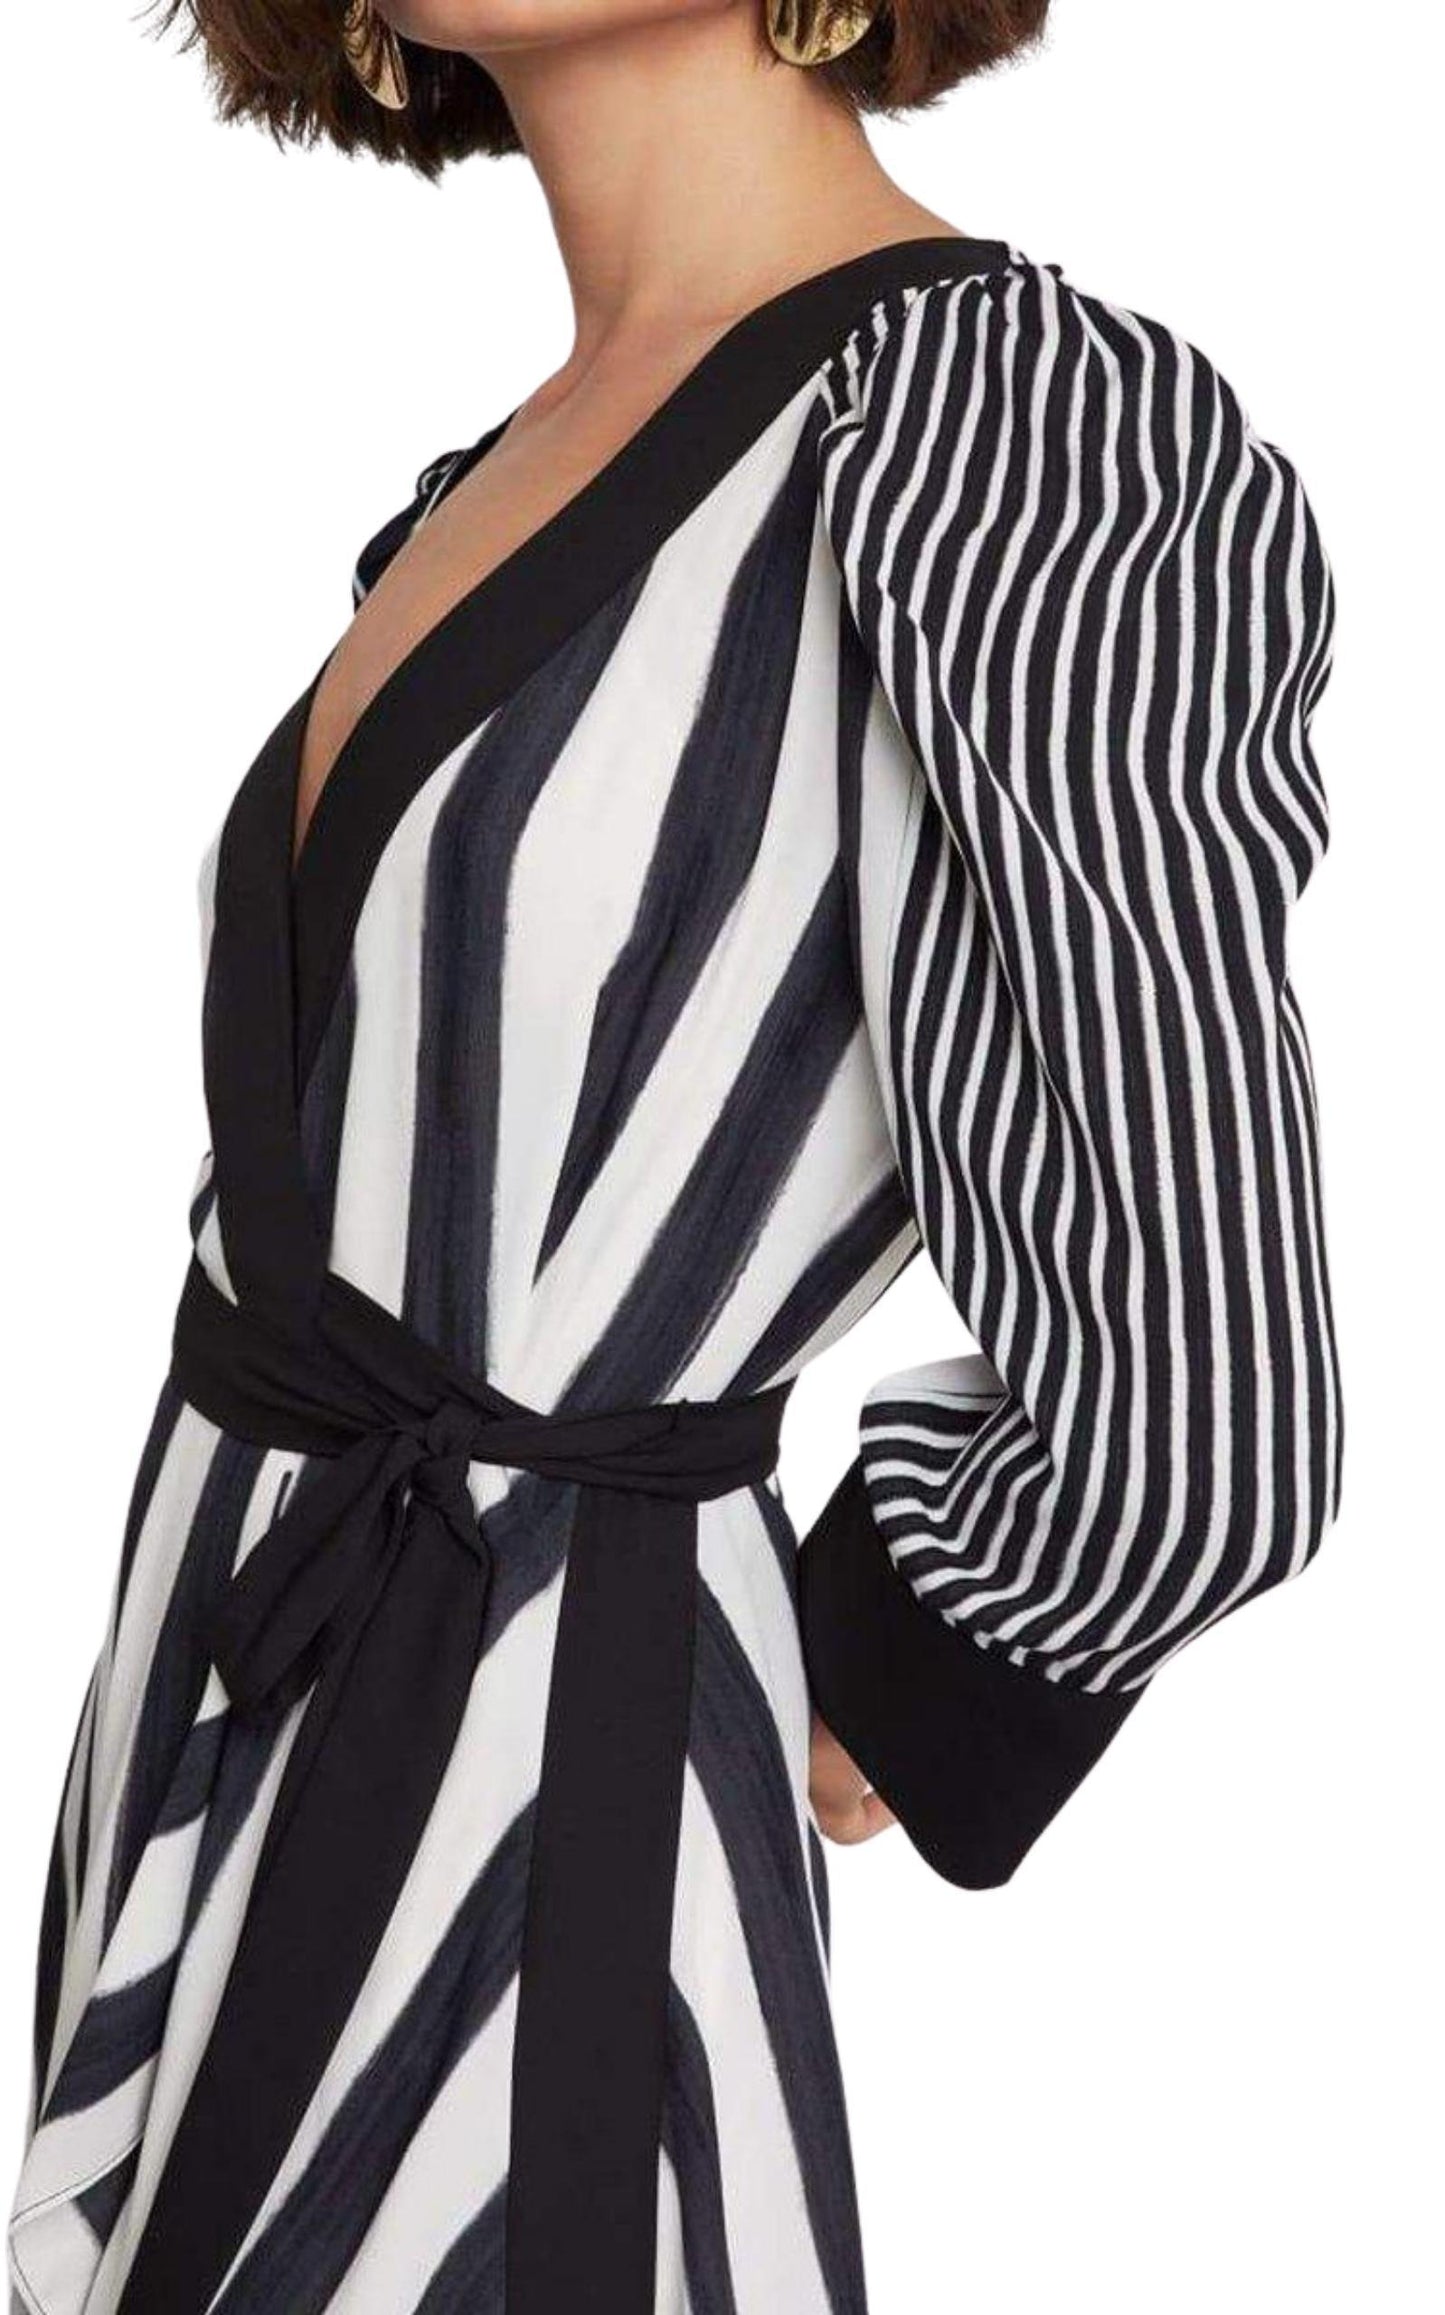  BCBGMAXAZRIACosta Stripe Faux Wrap Dress - Runway Catalog